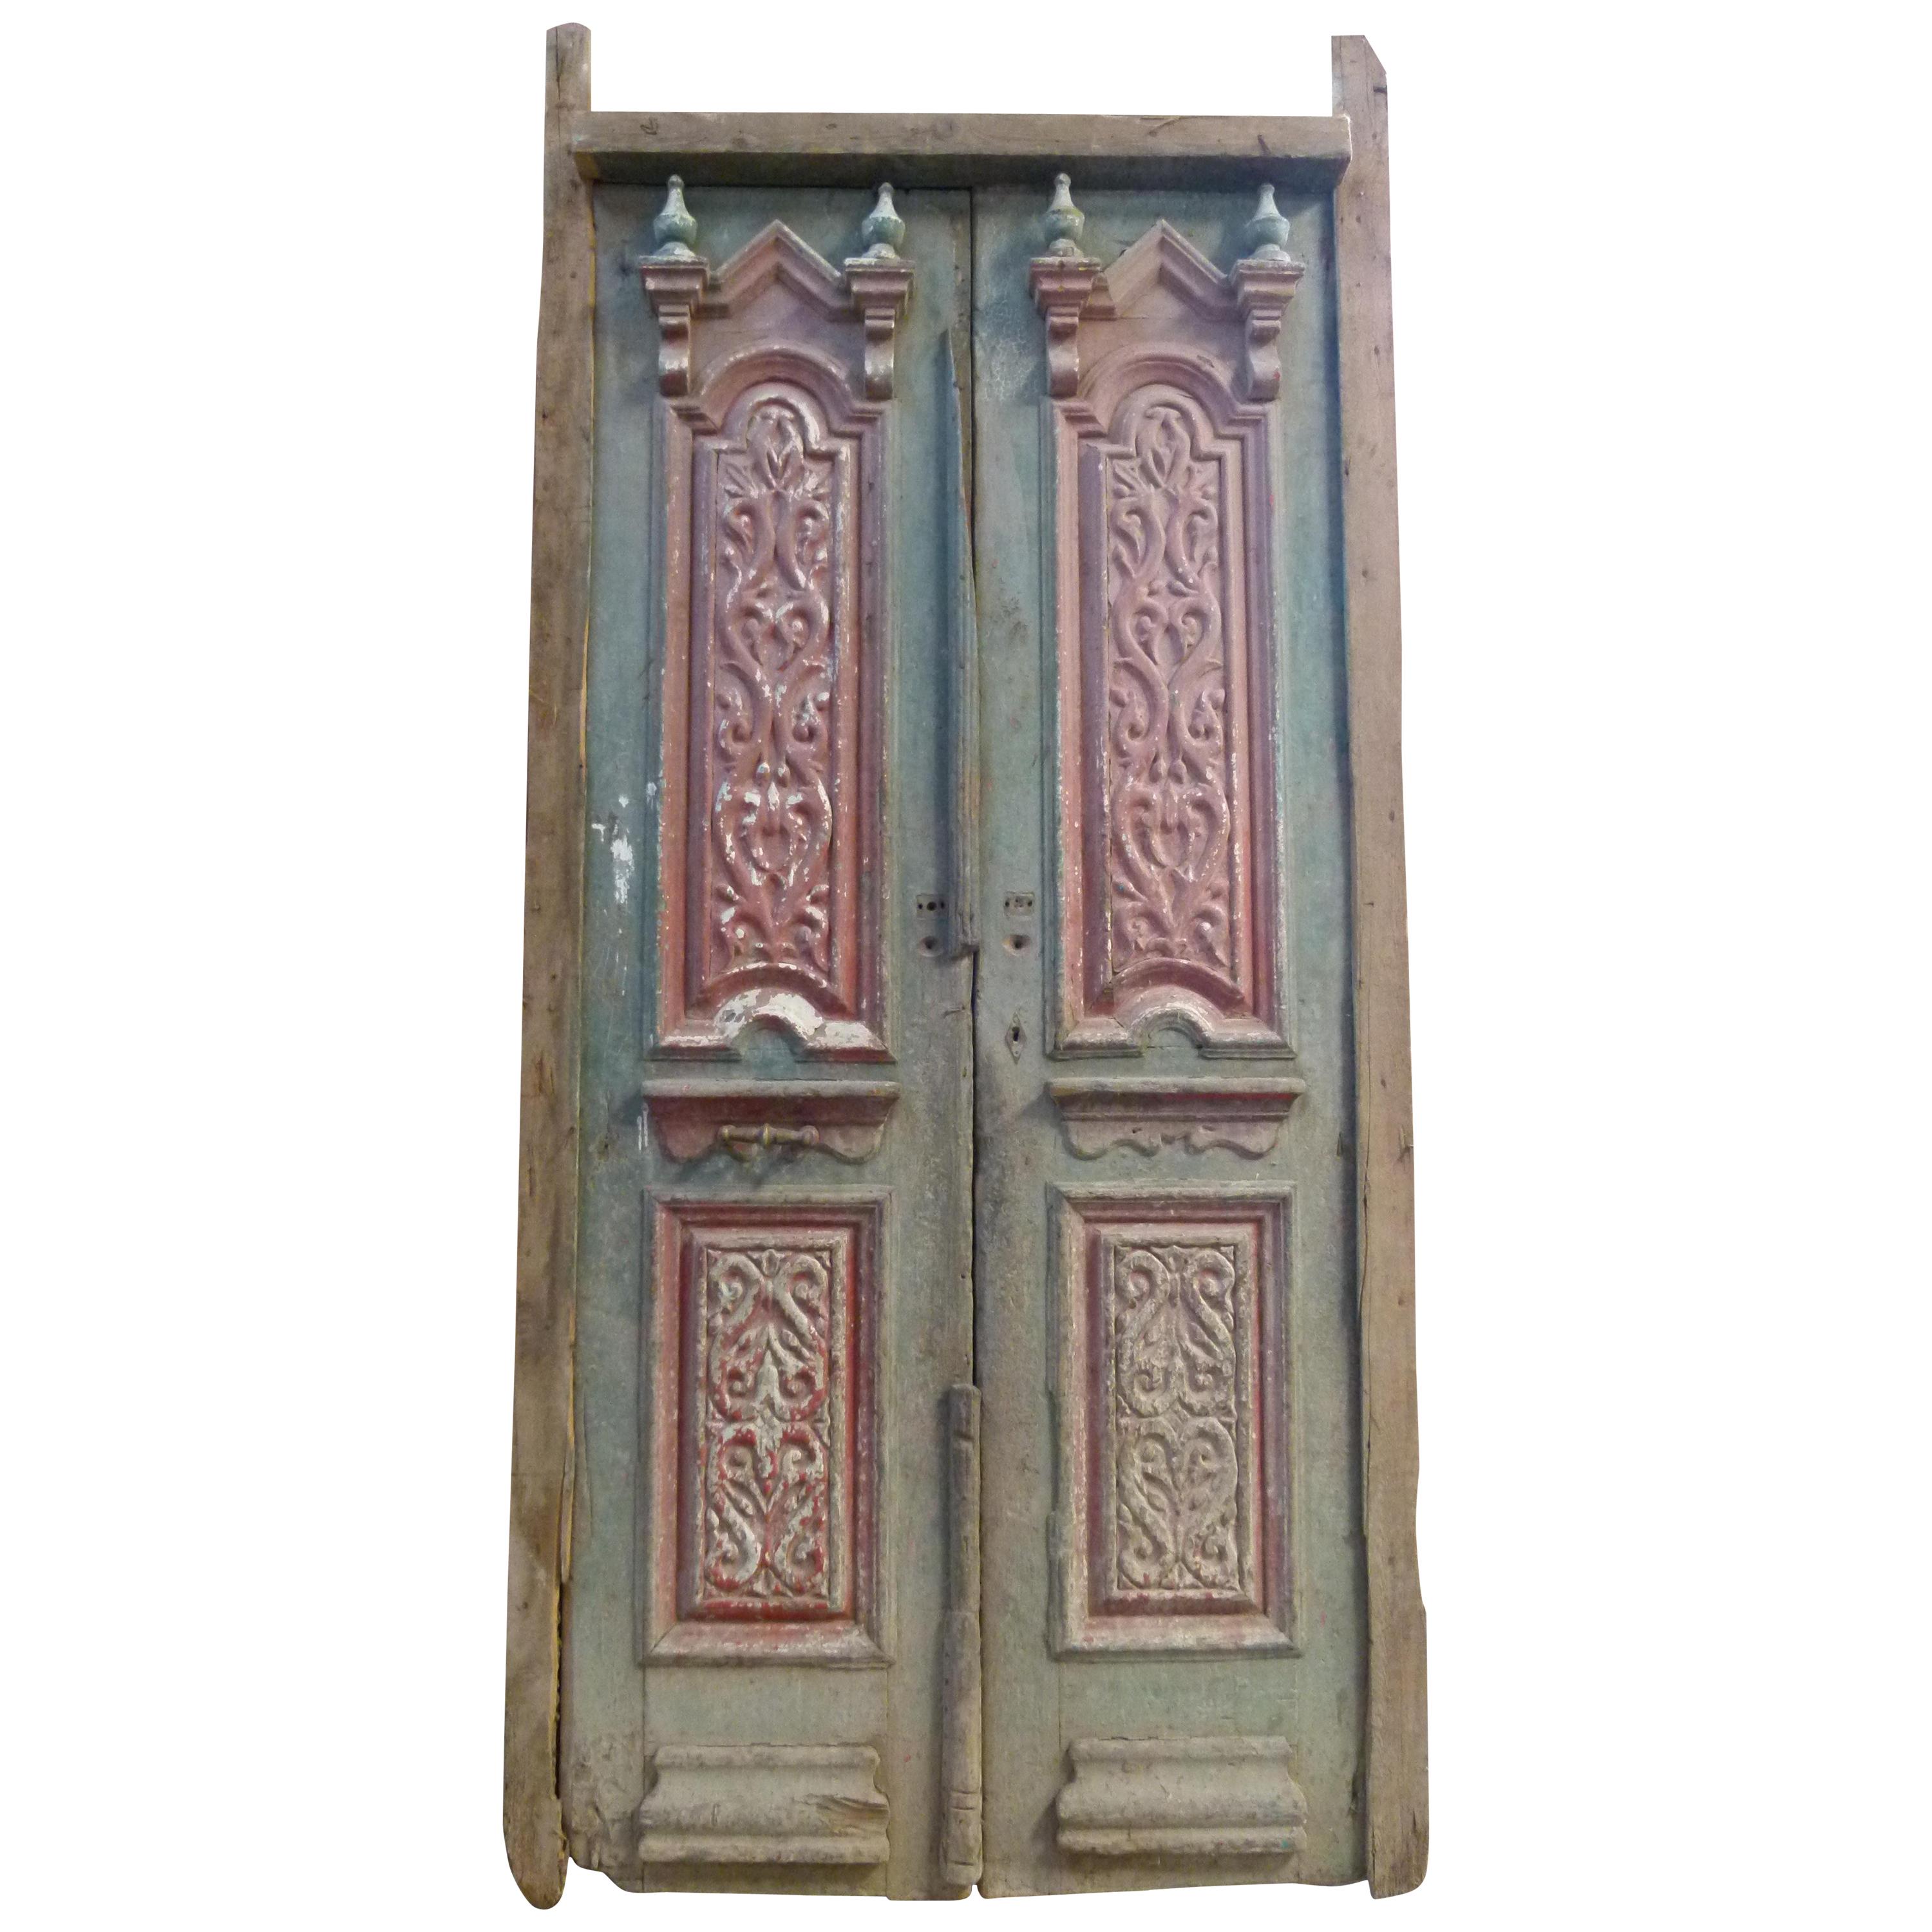 Wooden Double Front Door in Art Nouveau Style